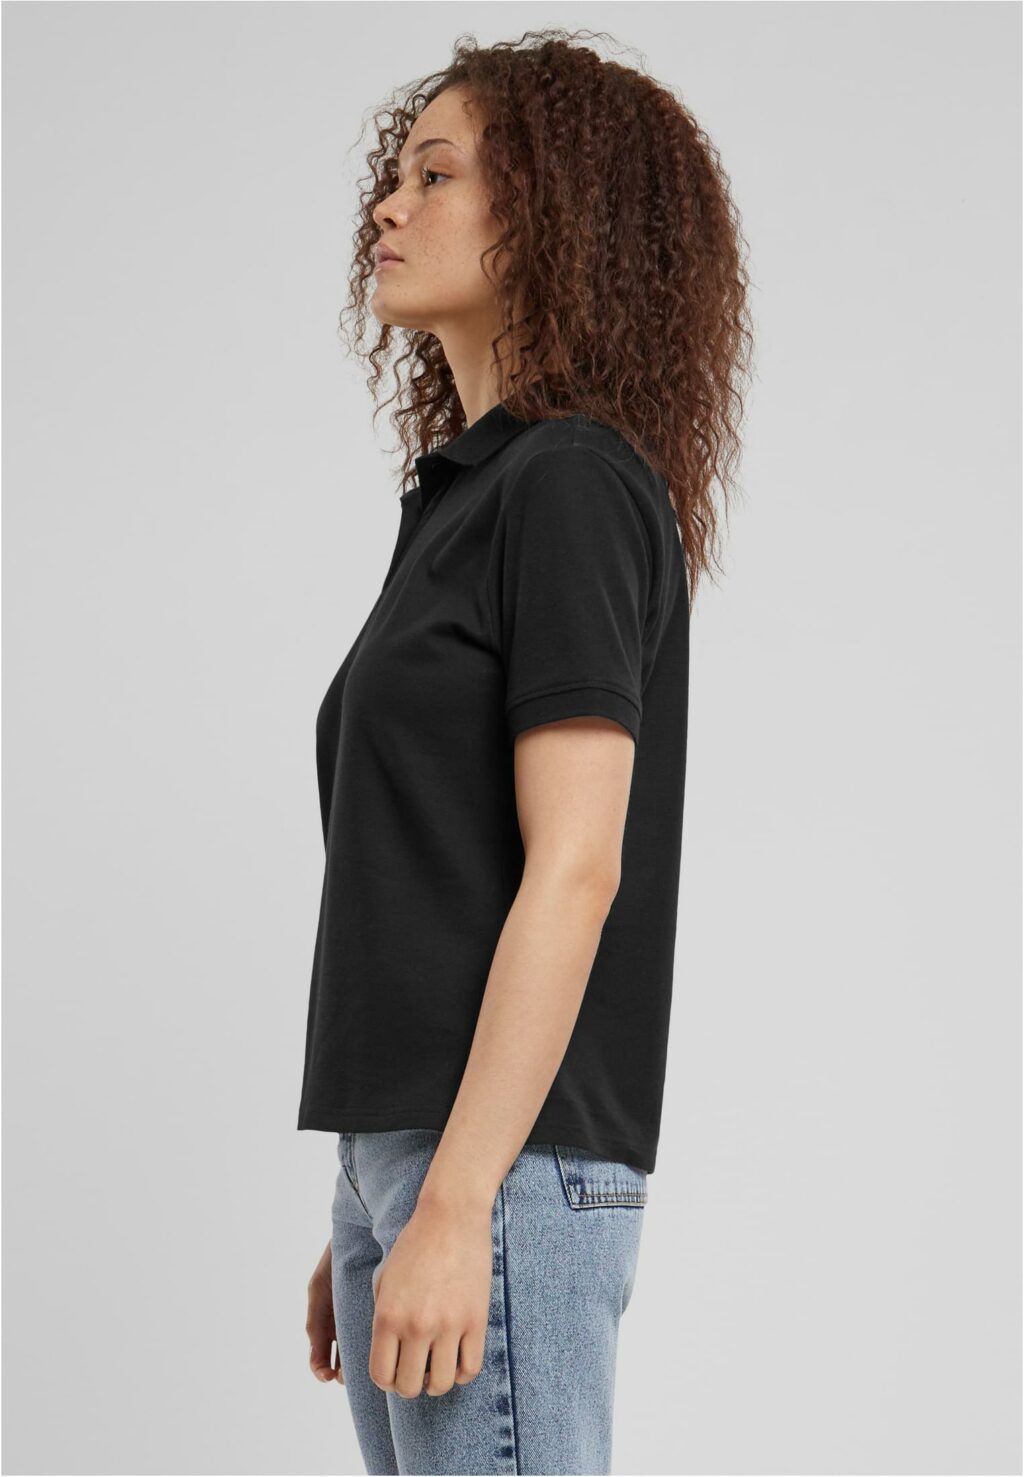 Urban Classics Ladies Polo Shirt black TB6183